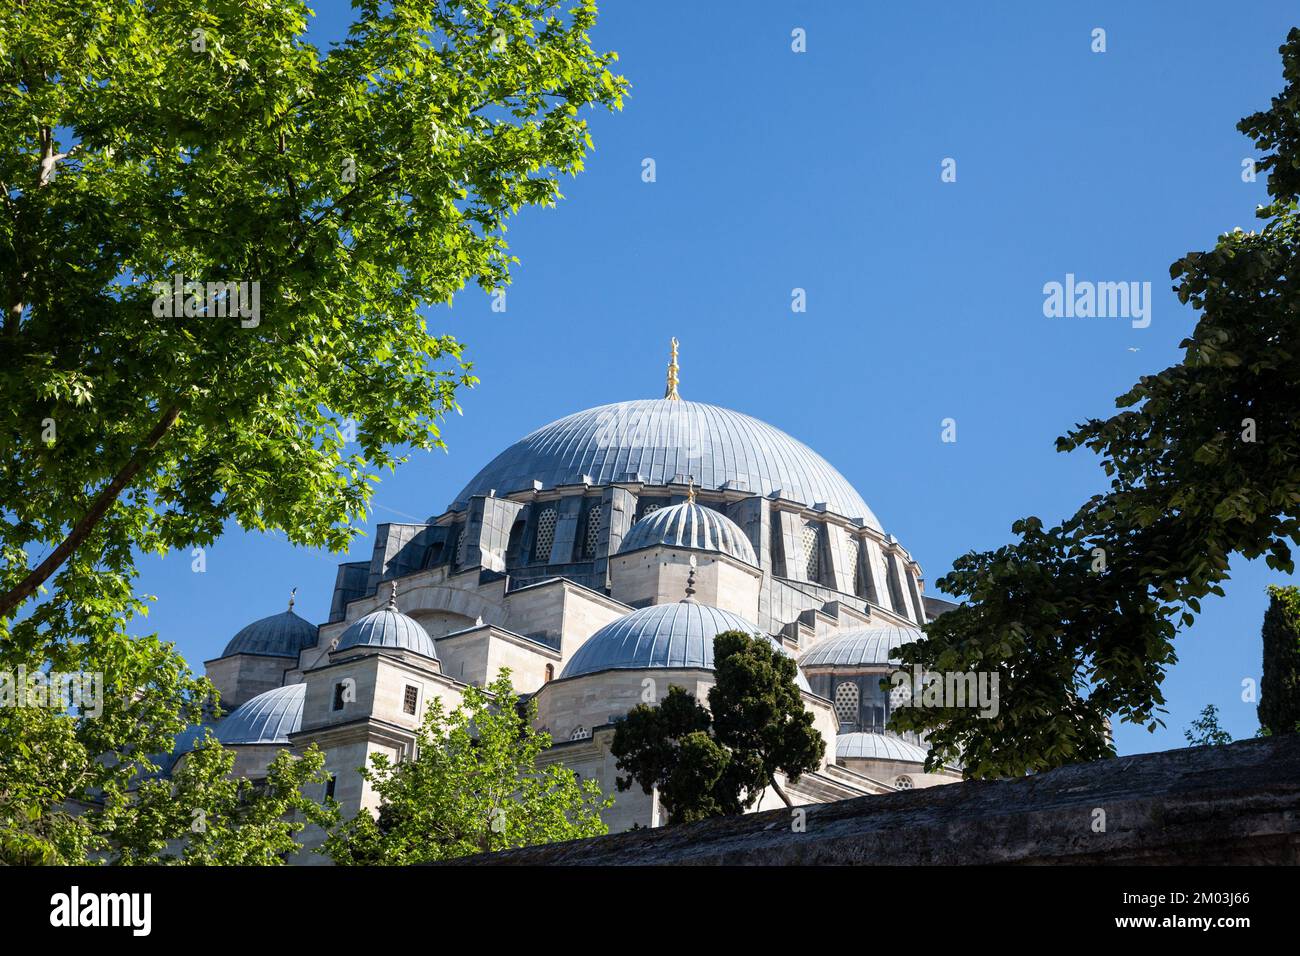 Foto de la mezquita de Santa Sofía. Hagia Sophia, oficialmente la Gran Mezquita de Hagia Sophia es una mezquita y un importante sitio cultural e histórico de Is Foto de stock